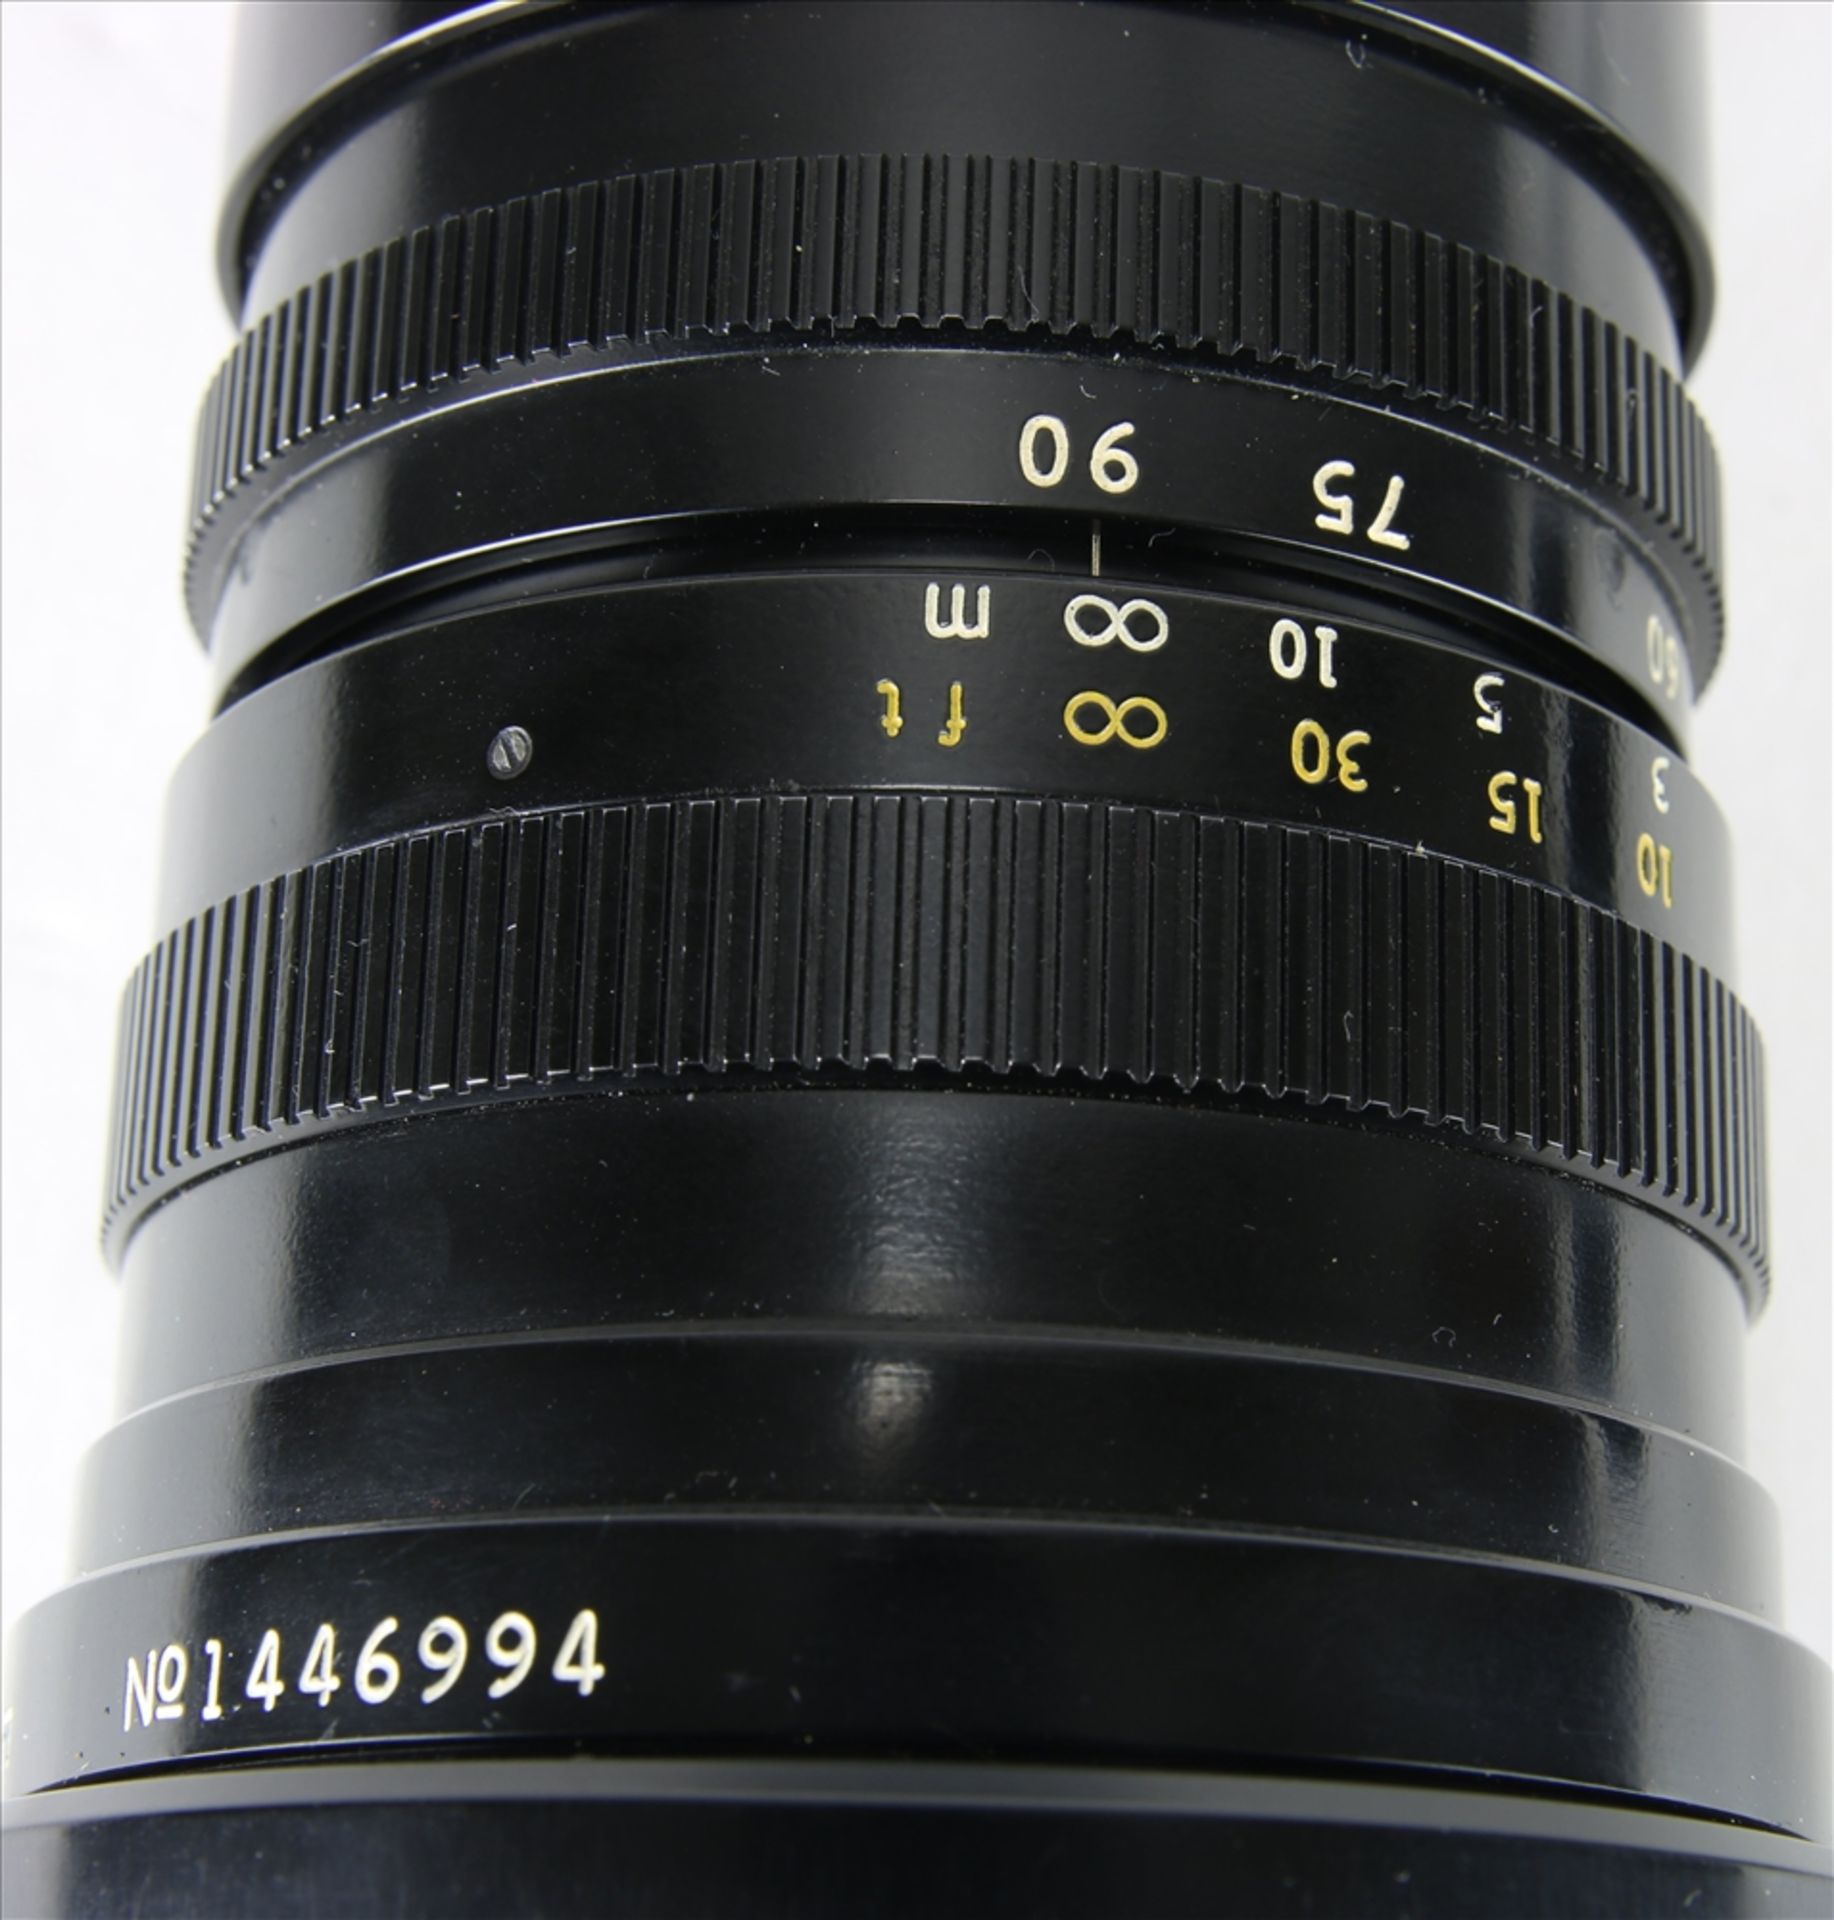 Leica Objektiv Angenieux France für Leitz - Leicaflex. 1:2,8 / 45 - 90 mm. Nicht geprüft. - Bild 4 aus 5